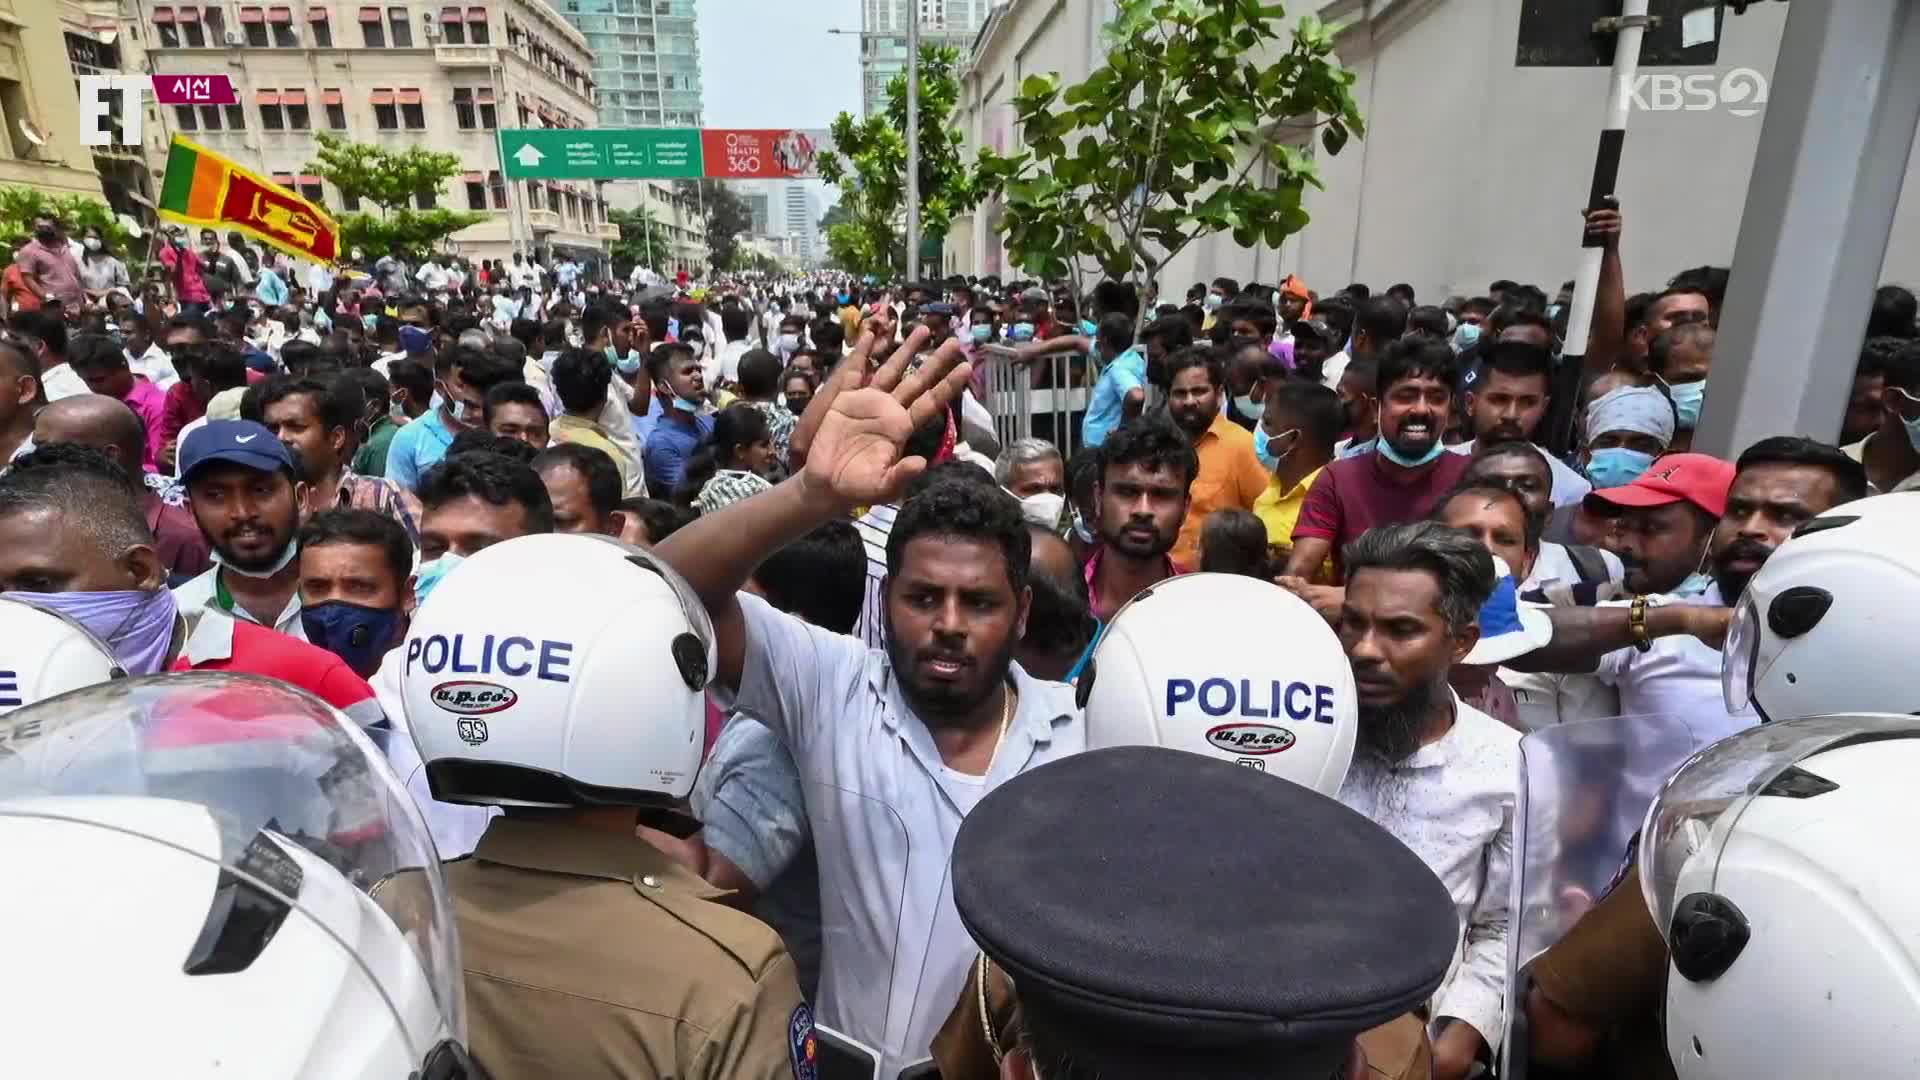 [ET] ‘최악의 경제난’ 스리랑카 시위 격화…군은 발포 명령